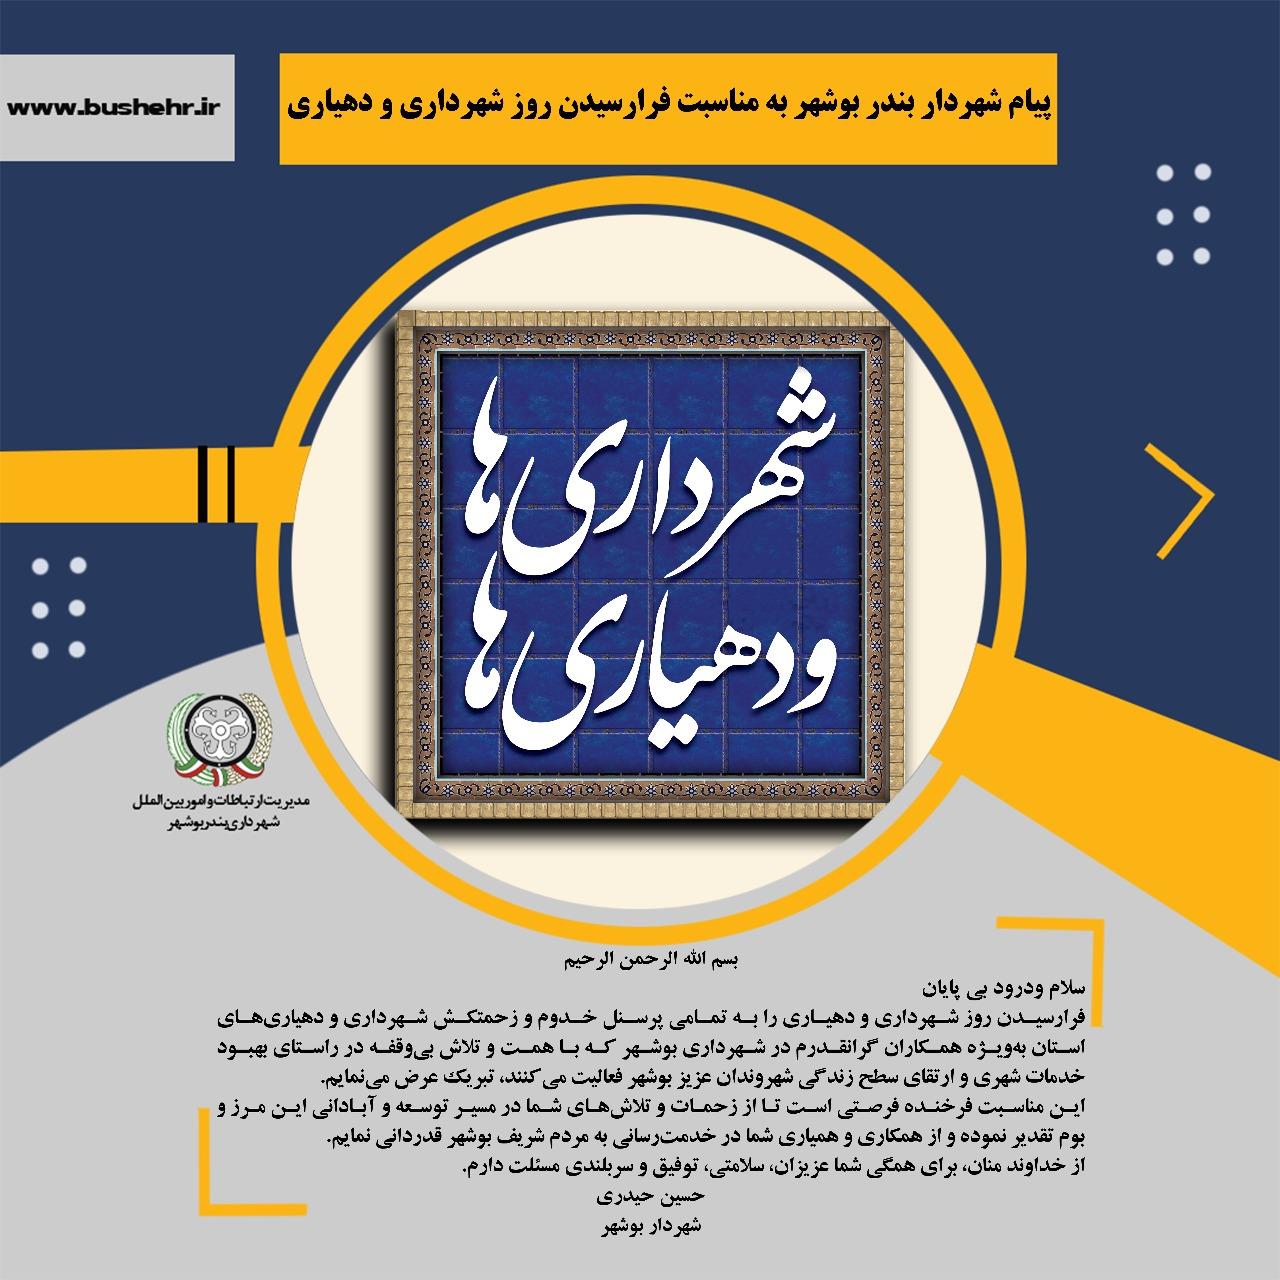 پیام شهردار بندر بوشهر به مناسبت فرارسیدن روز شهرداری‌ها و دهیاری‌ها